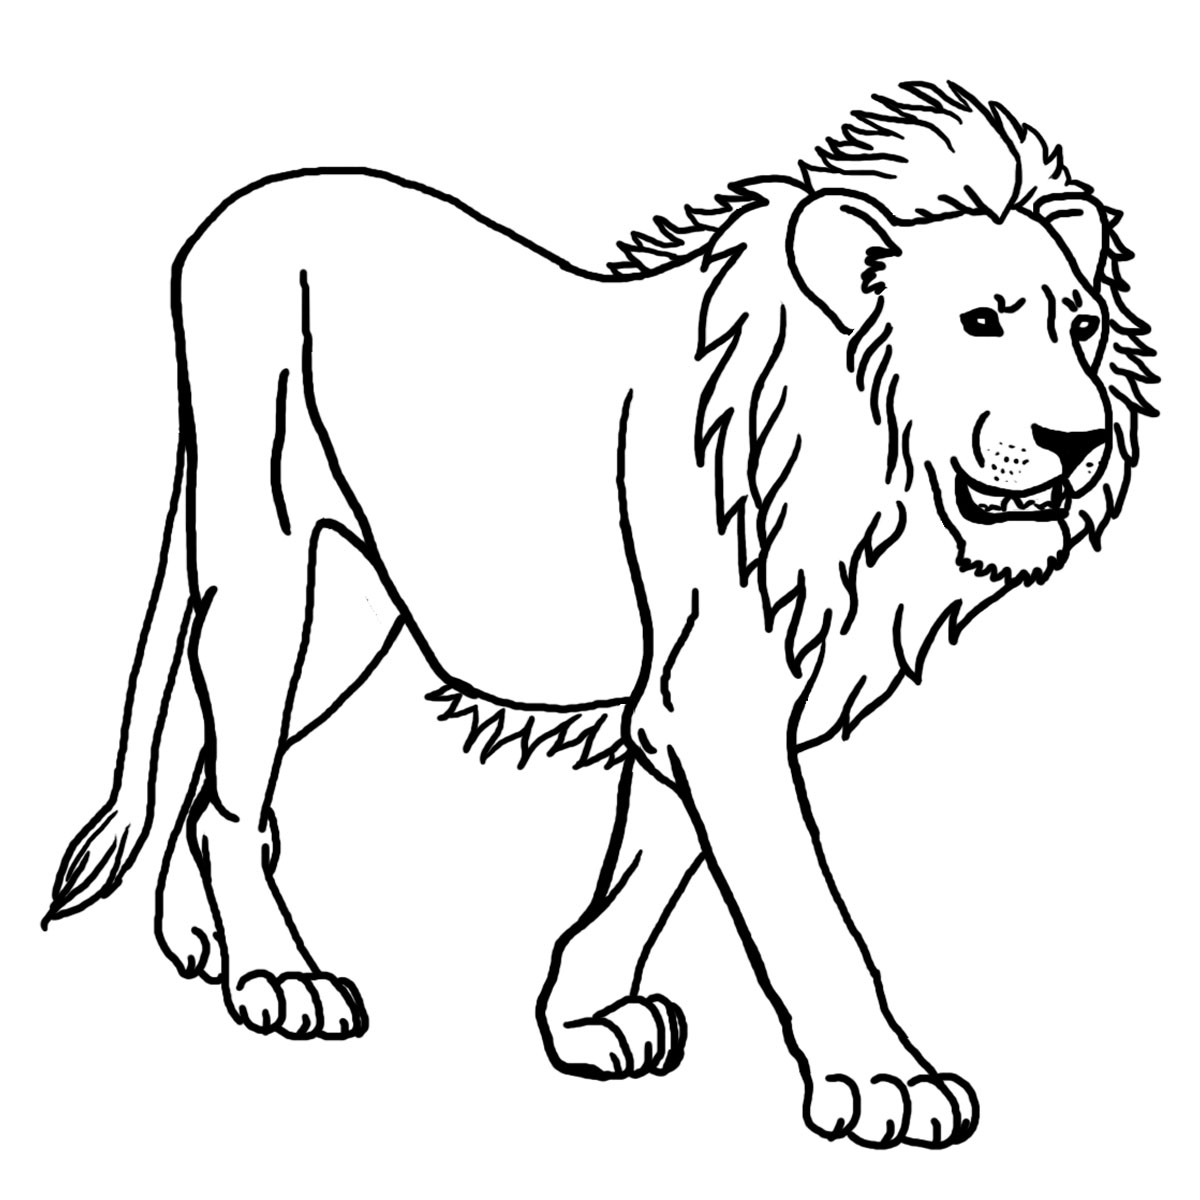 Joli dessin de lion à colorier